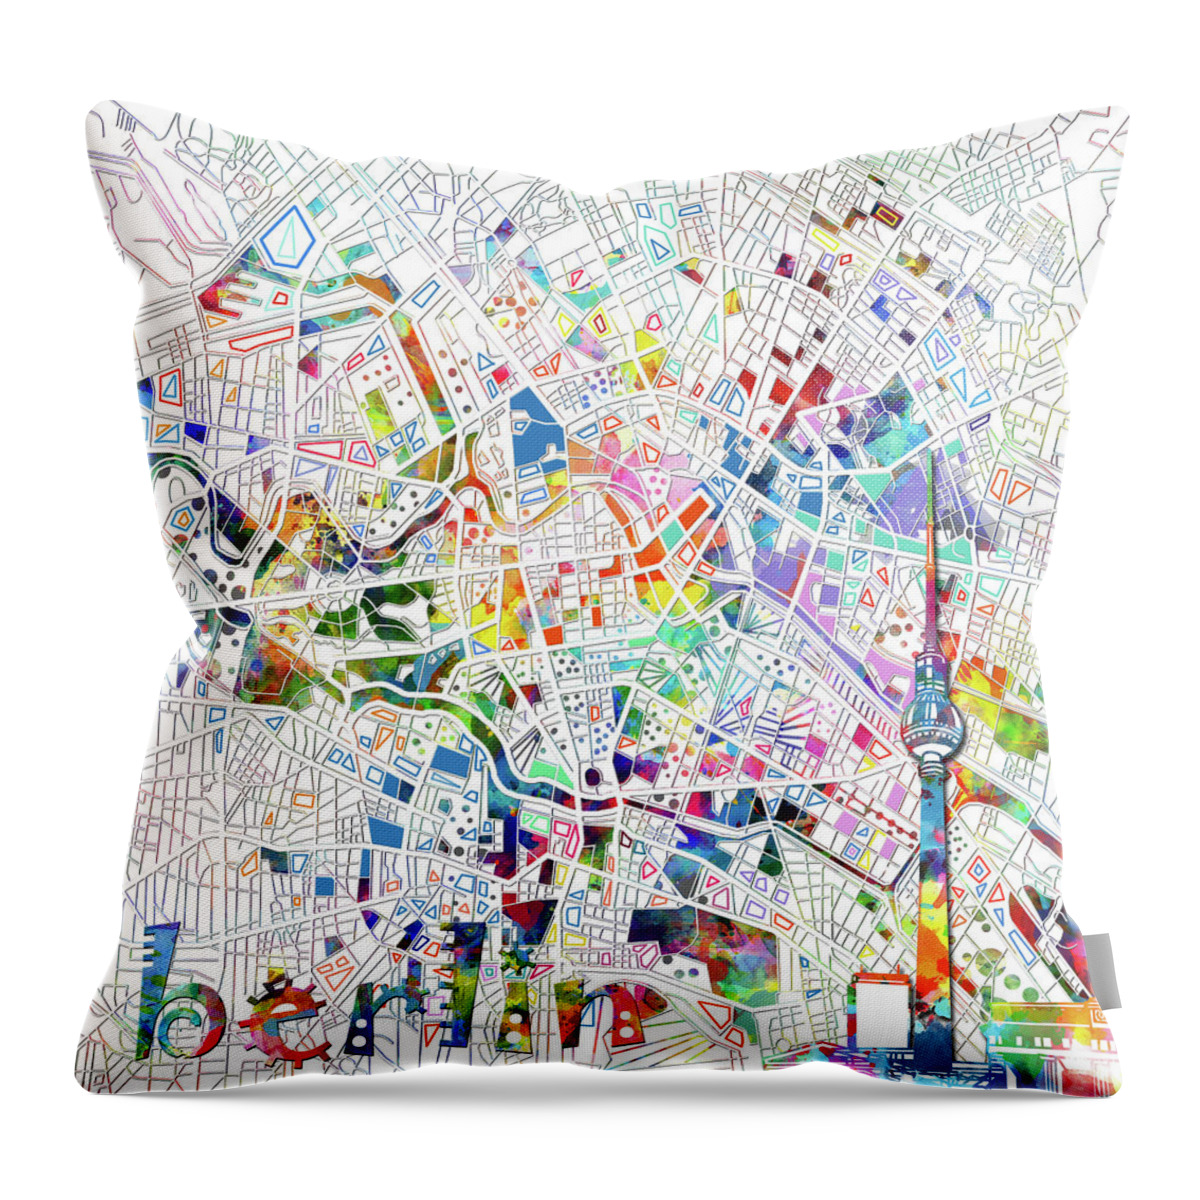 Berlin Throw Pillow featuring the digital art Berlin Map White by Bekim M